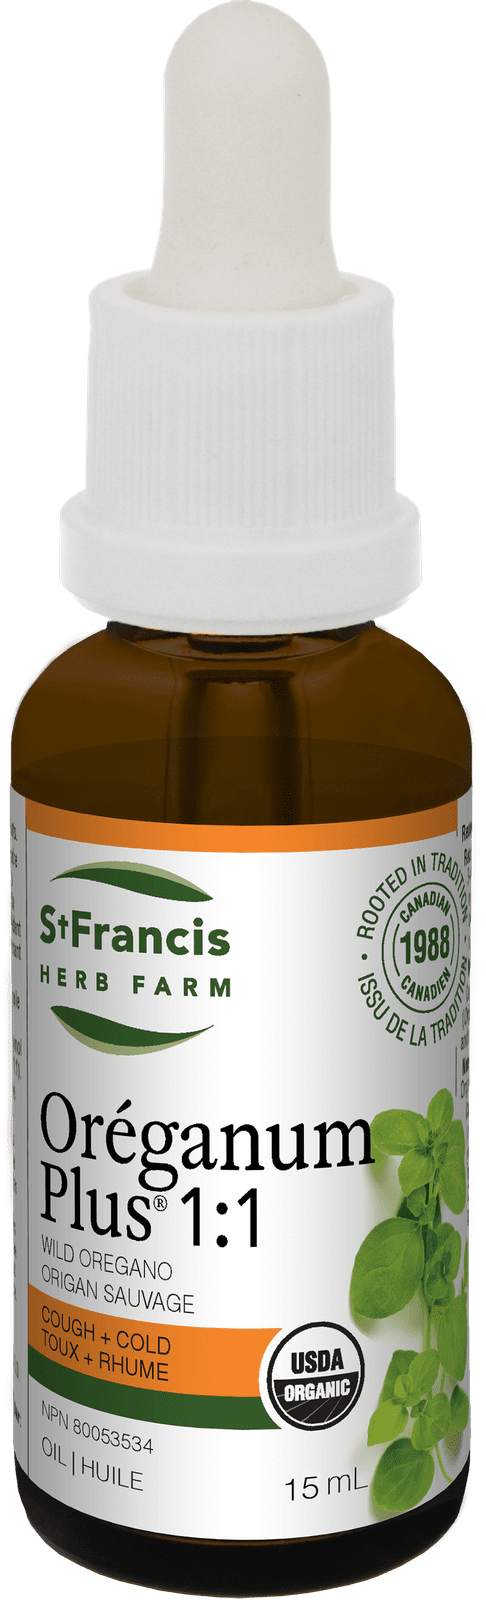 St Francis Herb Farm Oreganum Plus 1:1 Tincture 15 mL Image 1